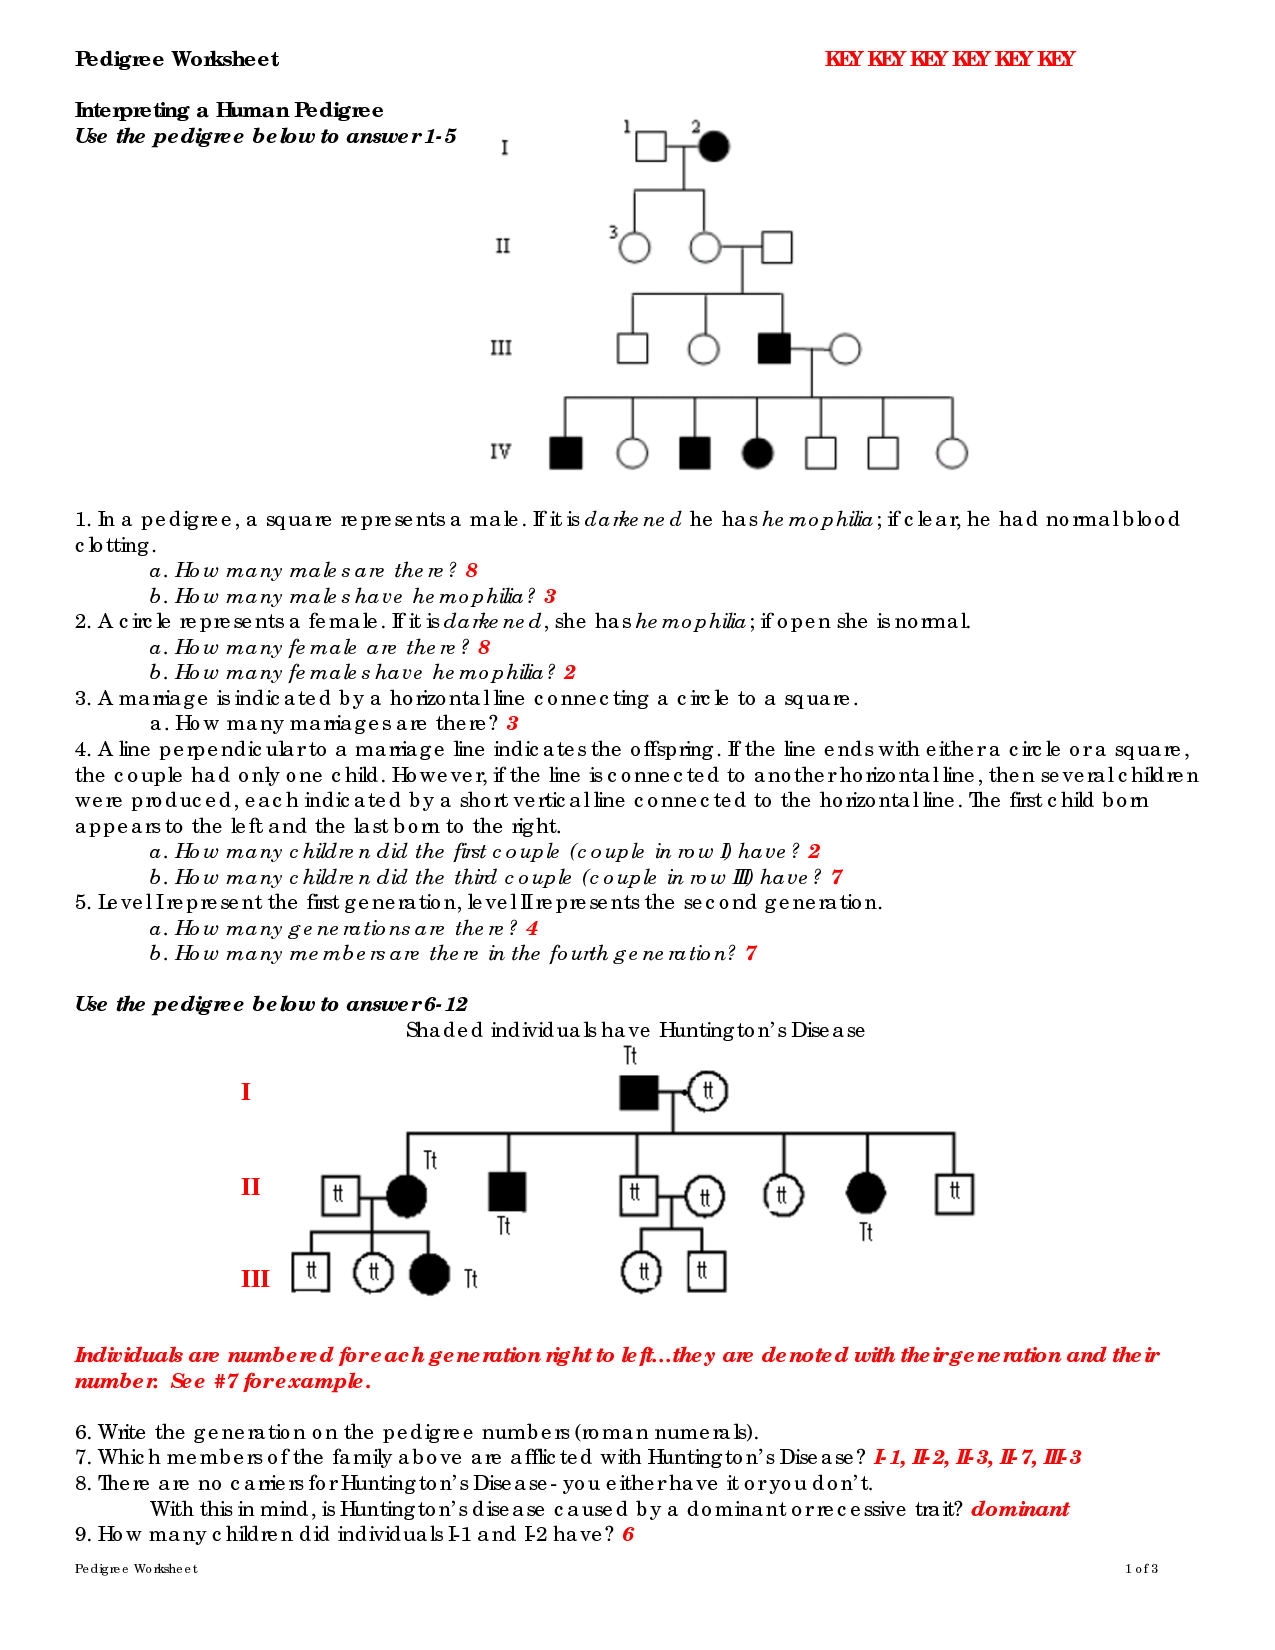 15 Best Images Of Pedigree Problem Worksheet Answers Genetics Pedigree Worksheet Answer Key 